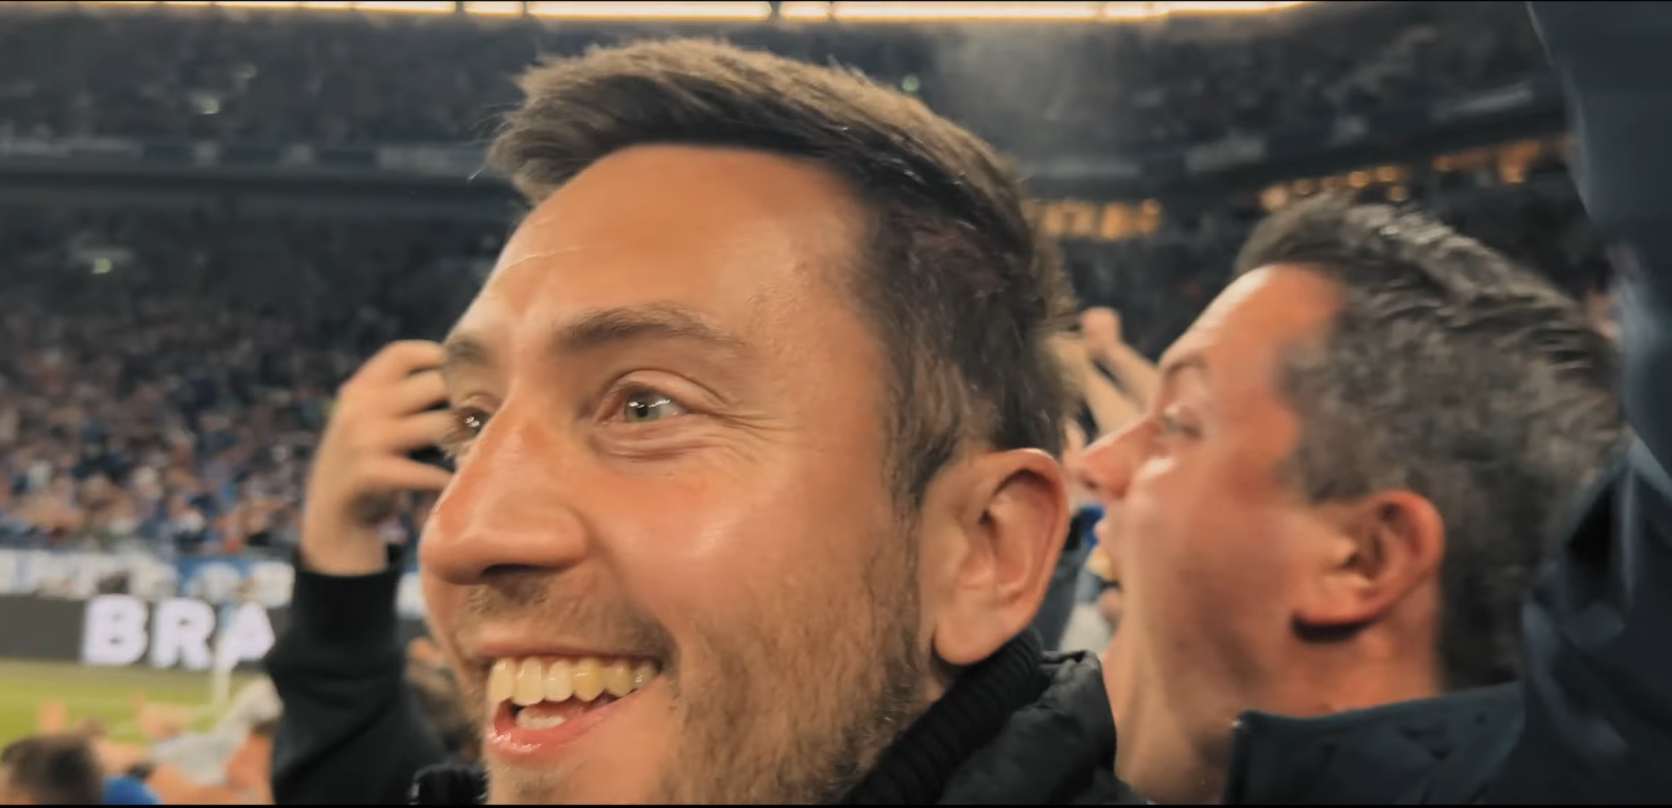 Das Bild zeigt die Gewinner des Fußballereignis Wochenendes in der Arena auf Schalke